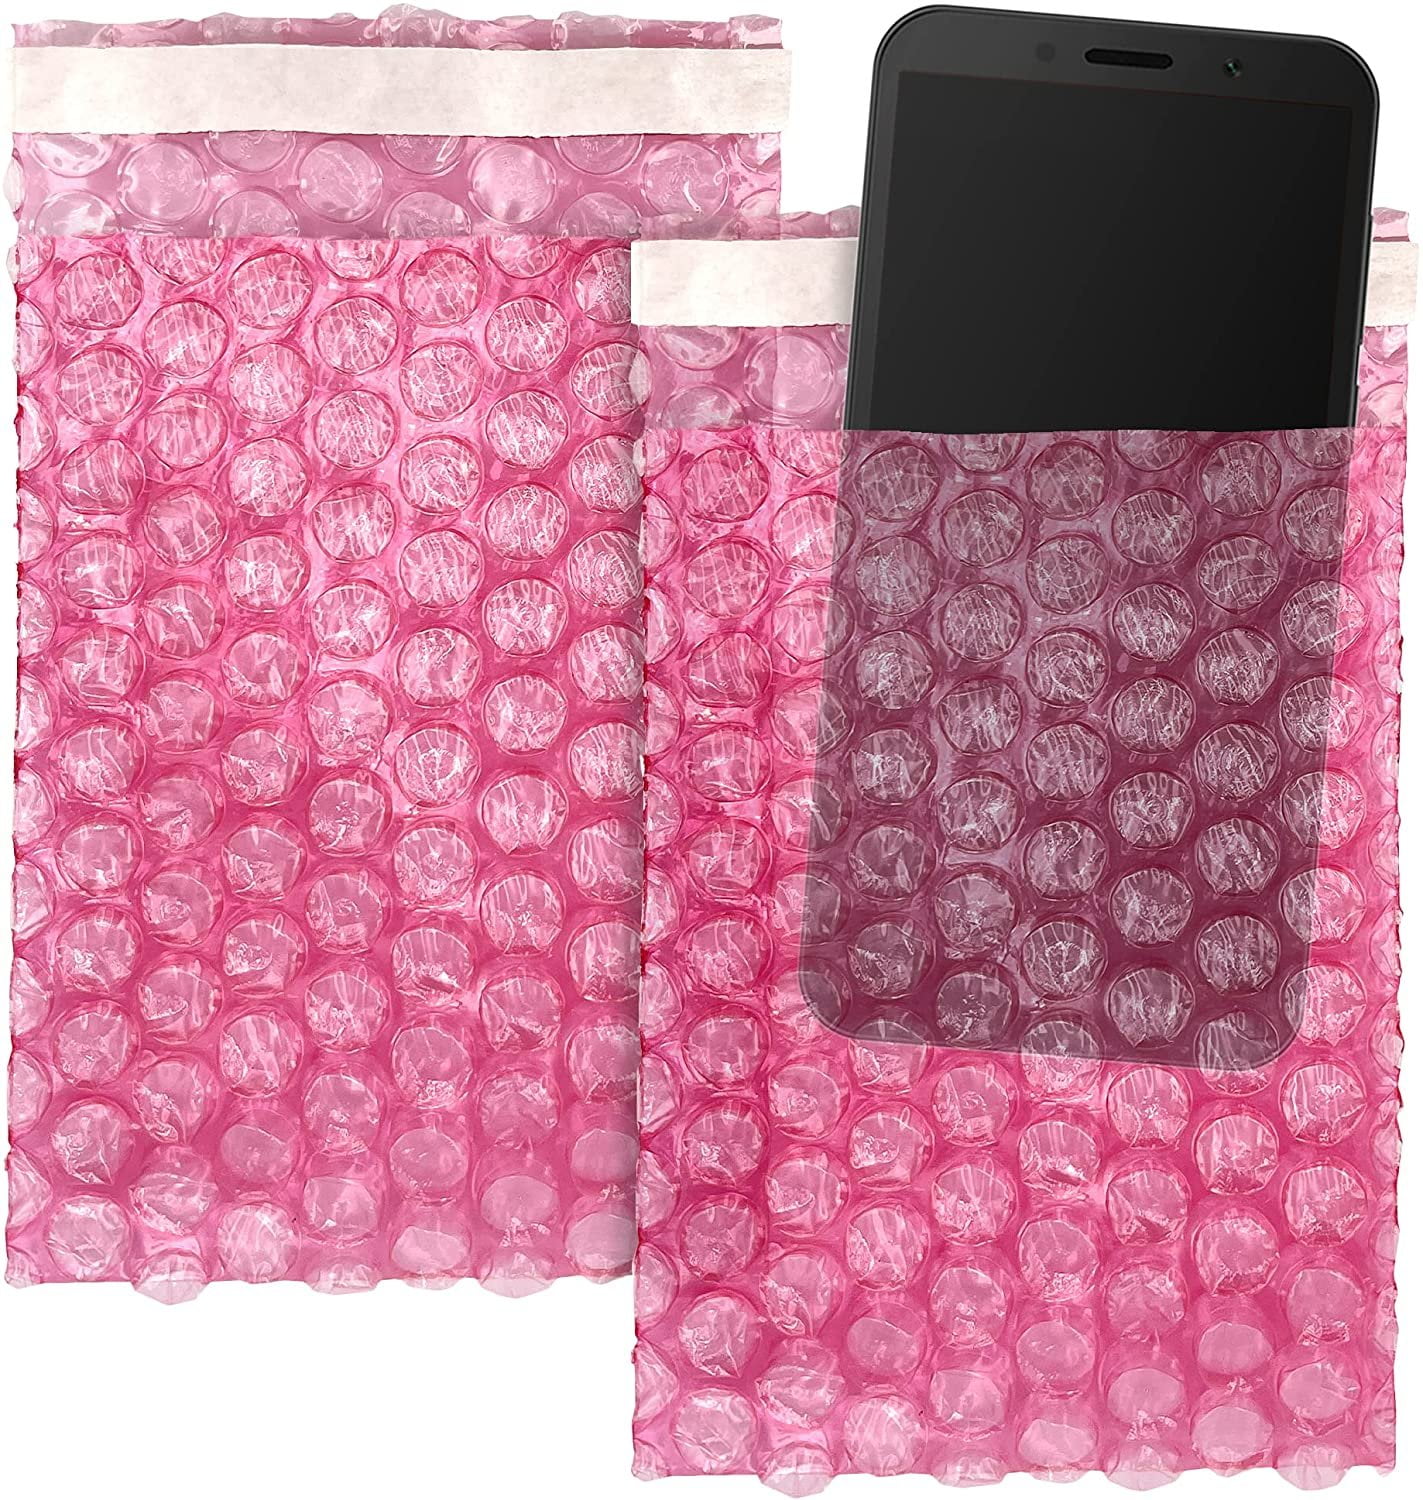 ✨ Buy Pink Bubble Wrap Bags 12 x 11.5 Anti-Static Pouches